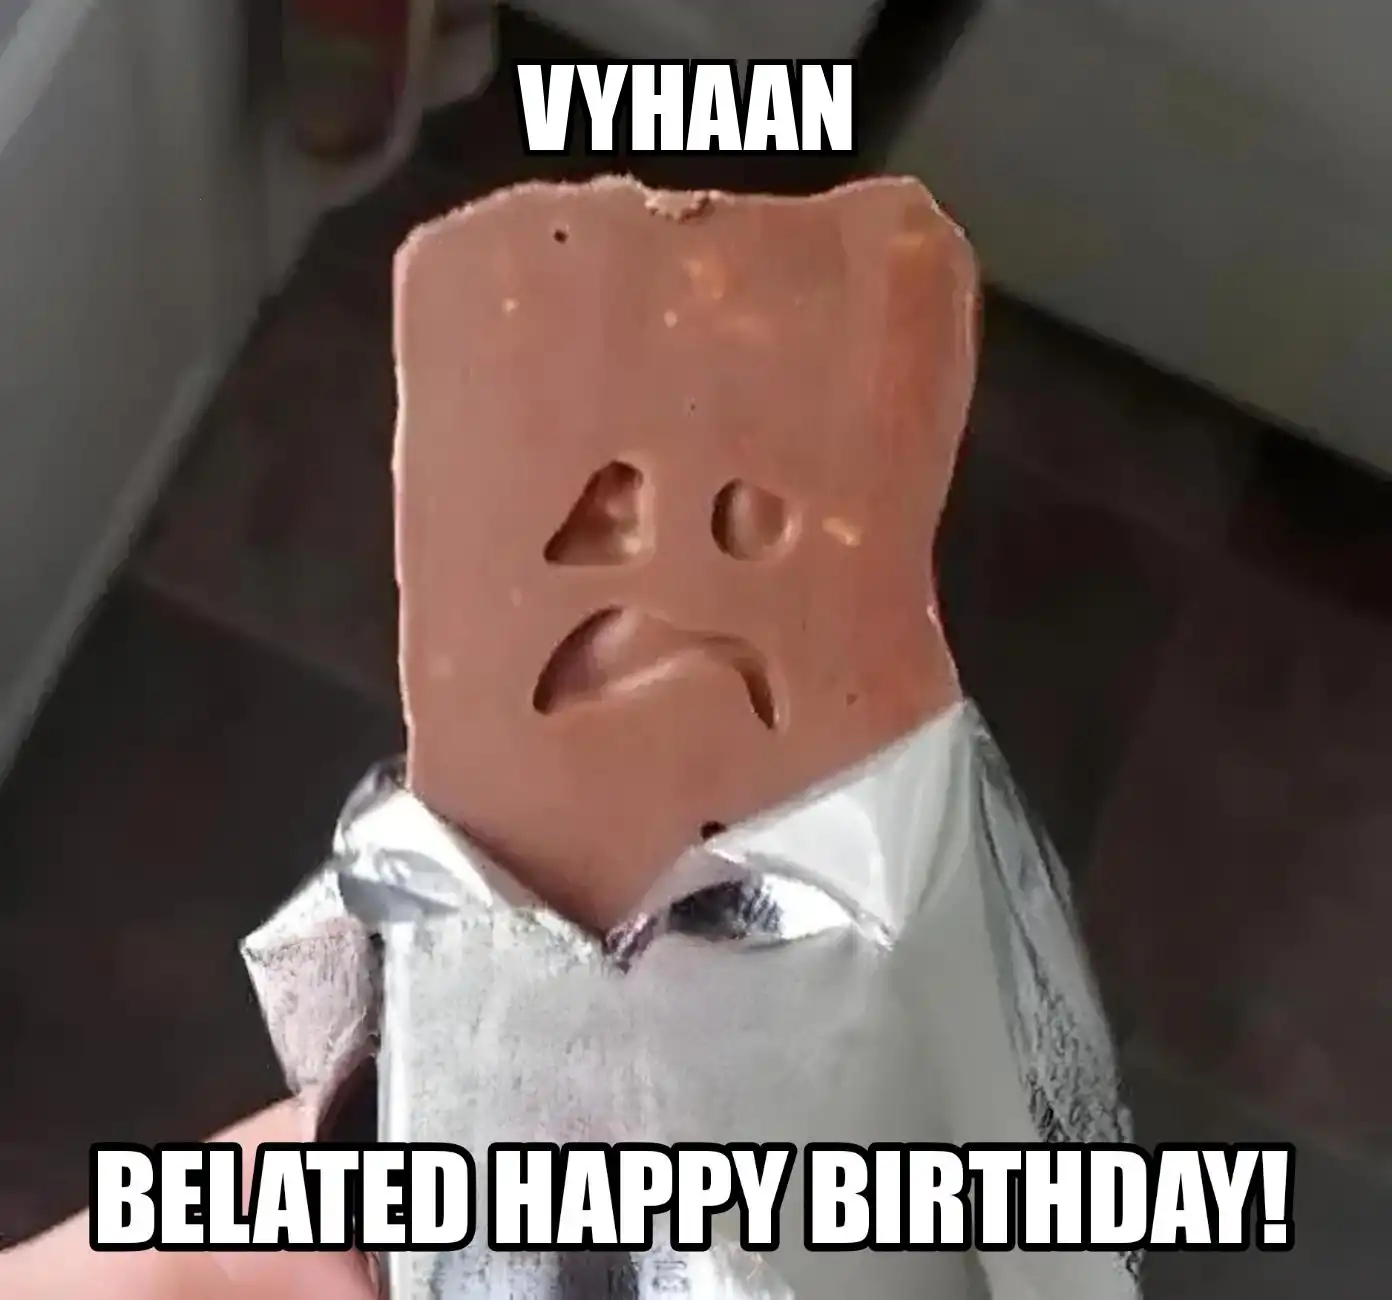 Happy Birthday Vyhaan Belated Happy Birthday Meme